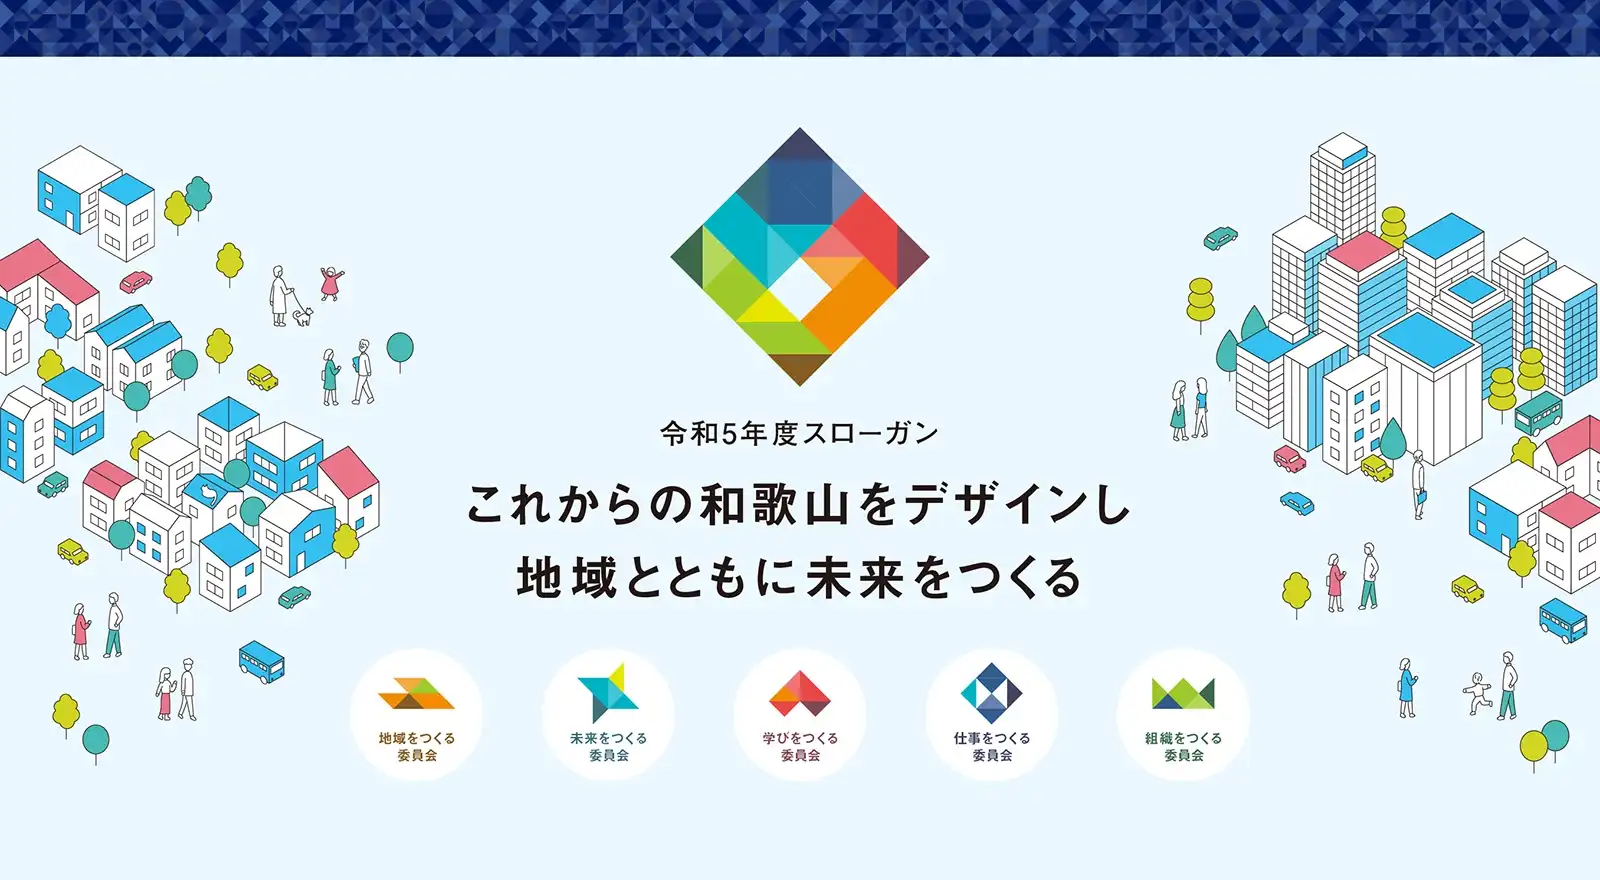 和歌山YEGの令和5年度のスローガン「これからの和歌山をデザインし、地域とともに未来をつくる」